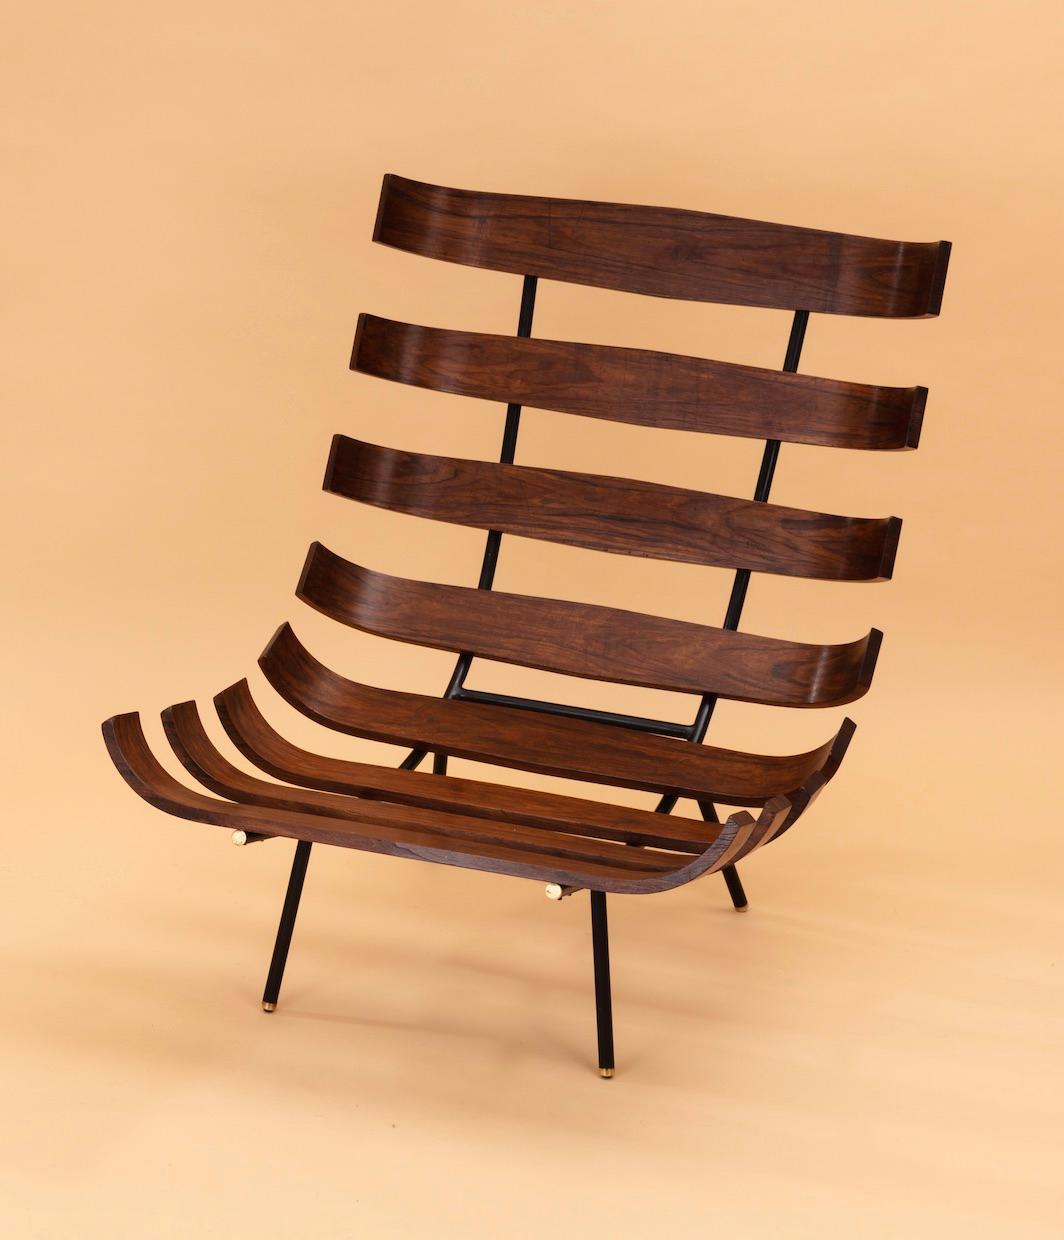 Magnifique et emblématique paire de deux fauteuils Costela par les légendaires designers brésiliens Carlo Hauner et Martin Eisler pour Forma, Brésil.  Excellent état, bois de teck. Le nom 